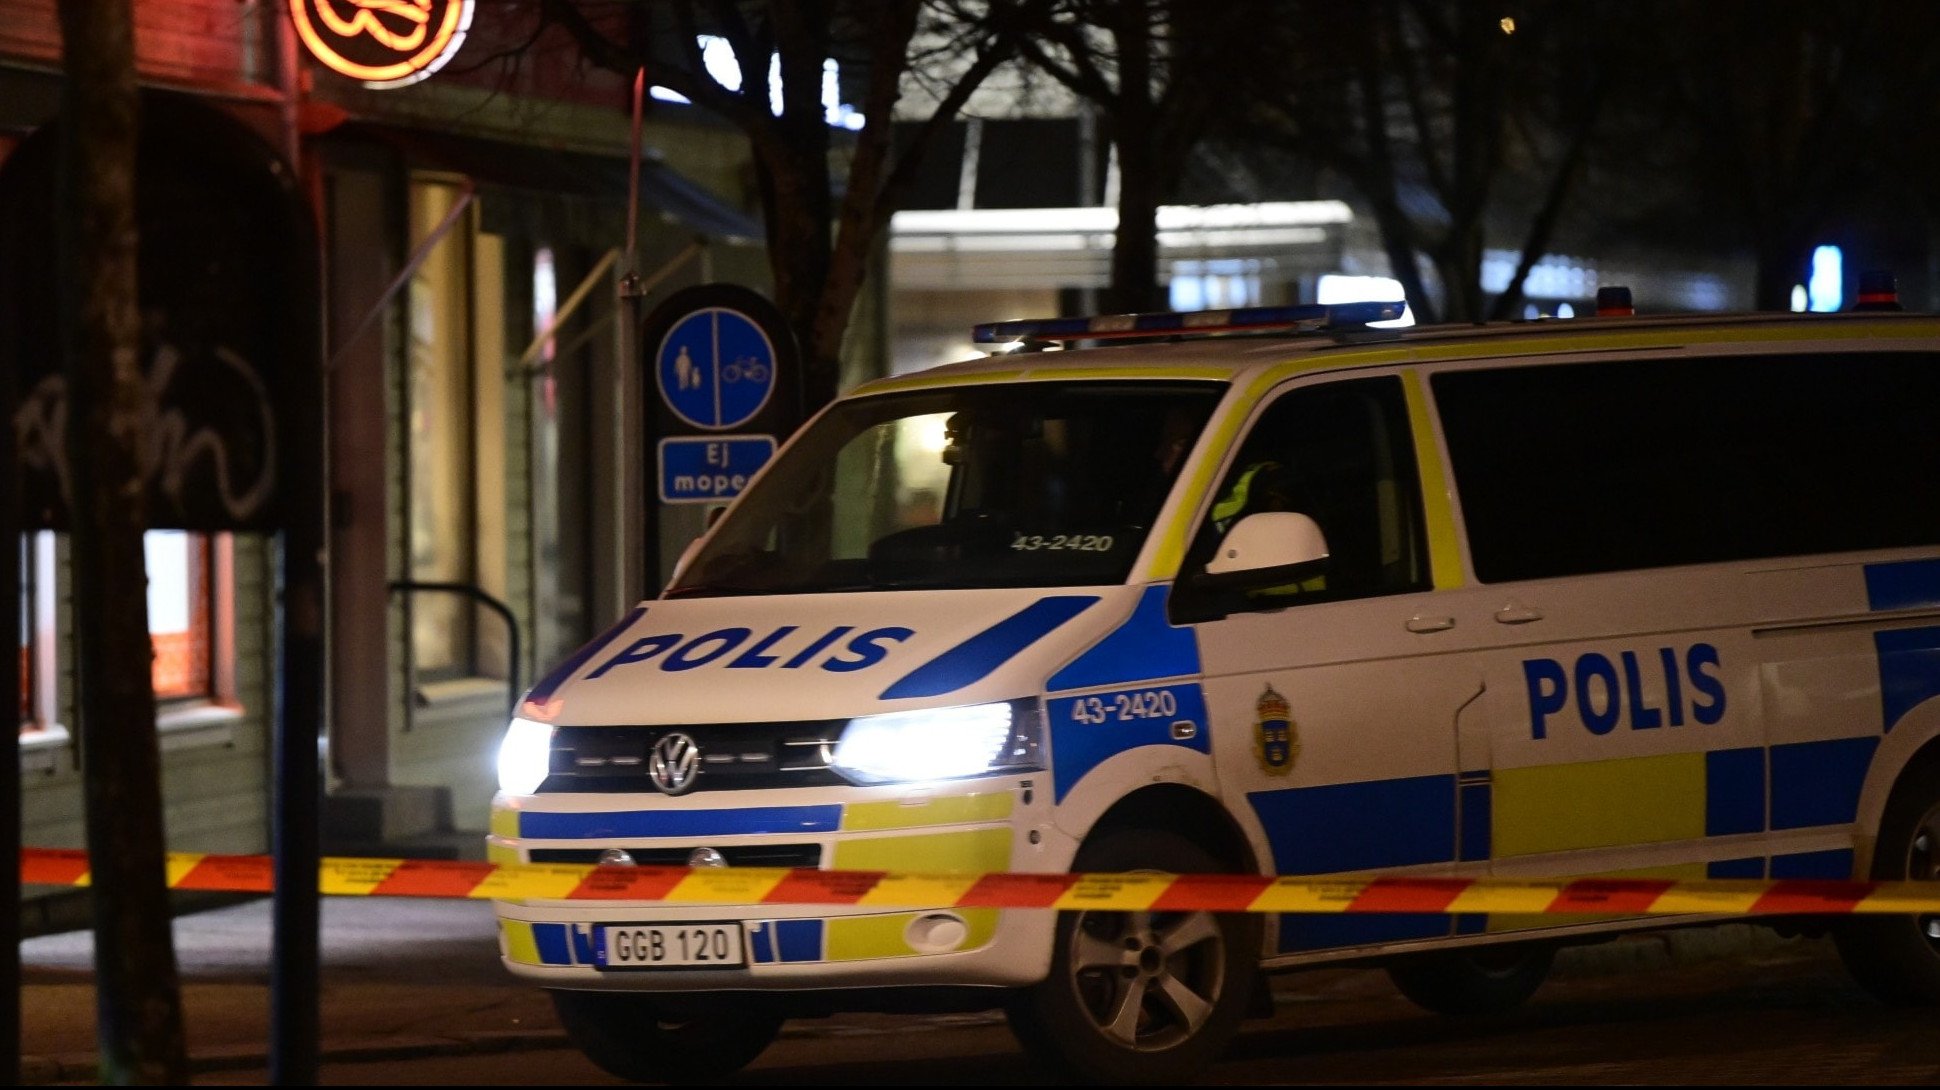 Ocho heridos en un ataque con cuchillo en Suecia investigado como un "ataque terrorista".